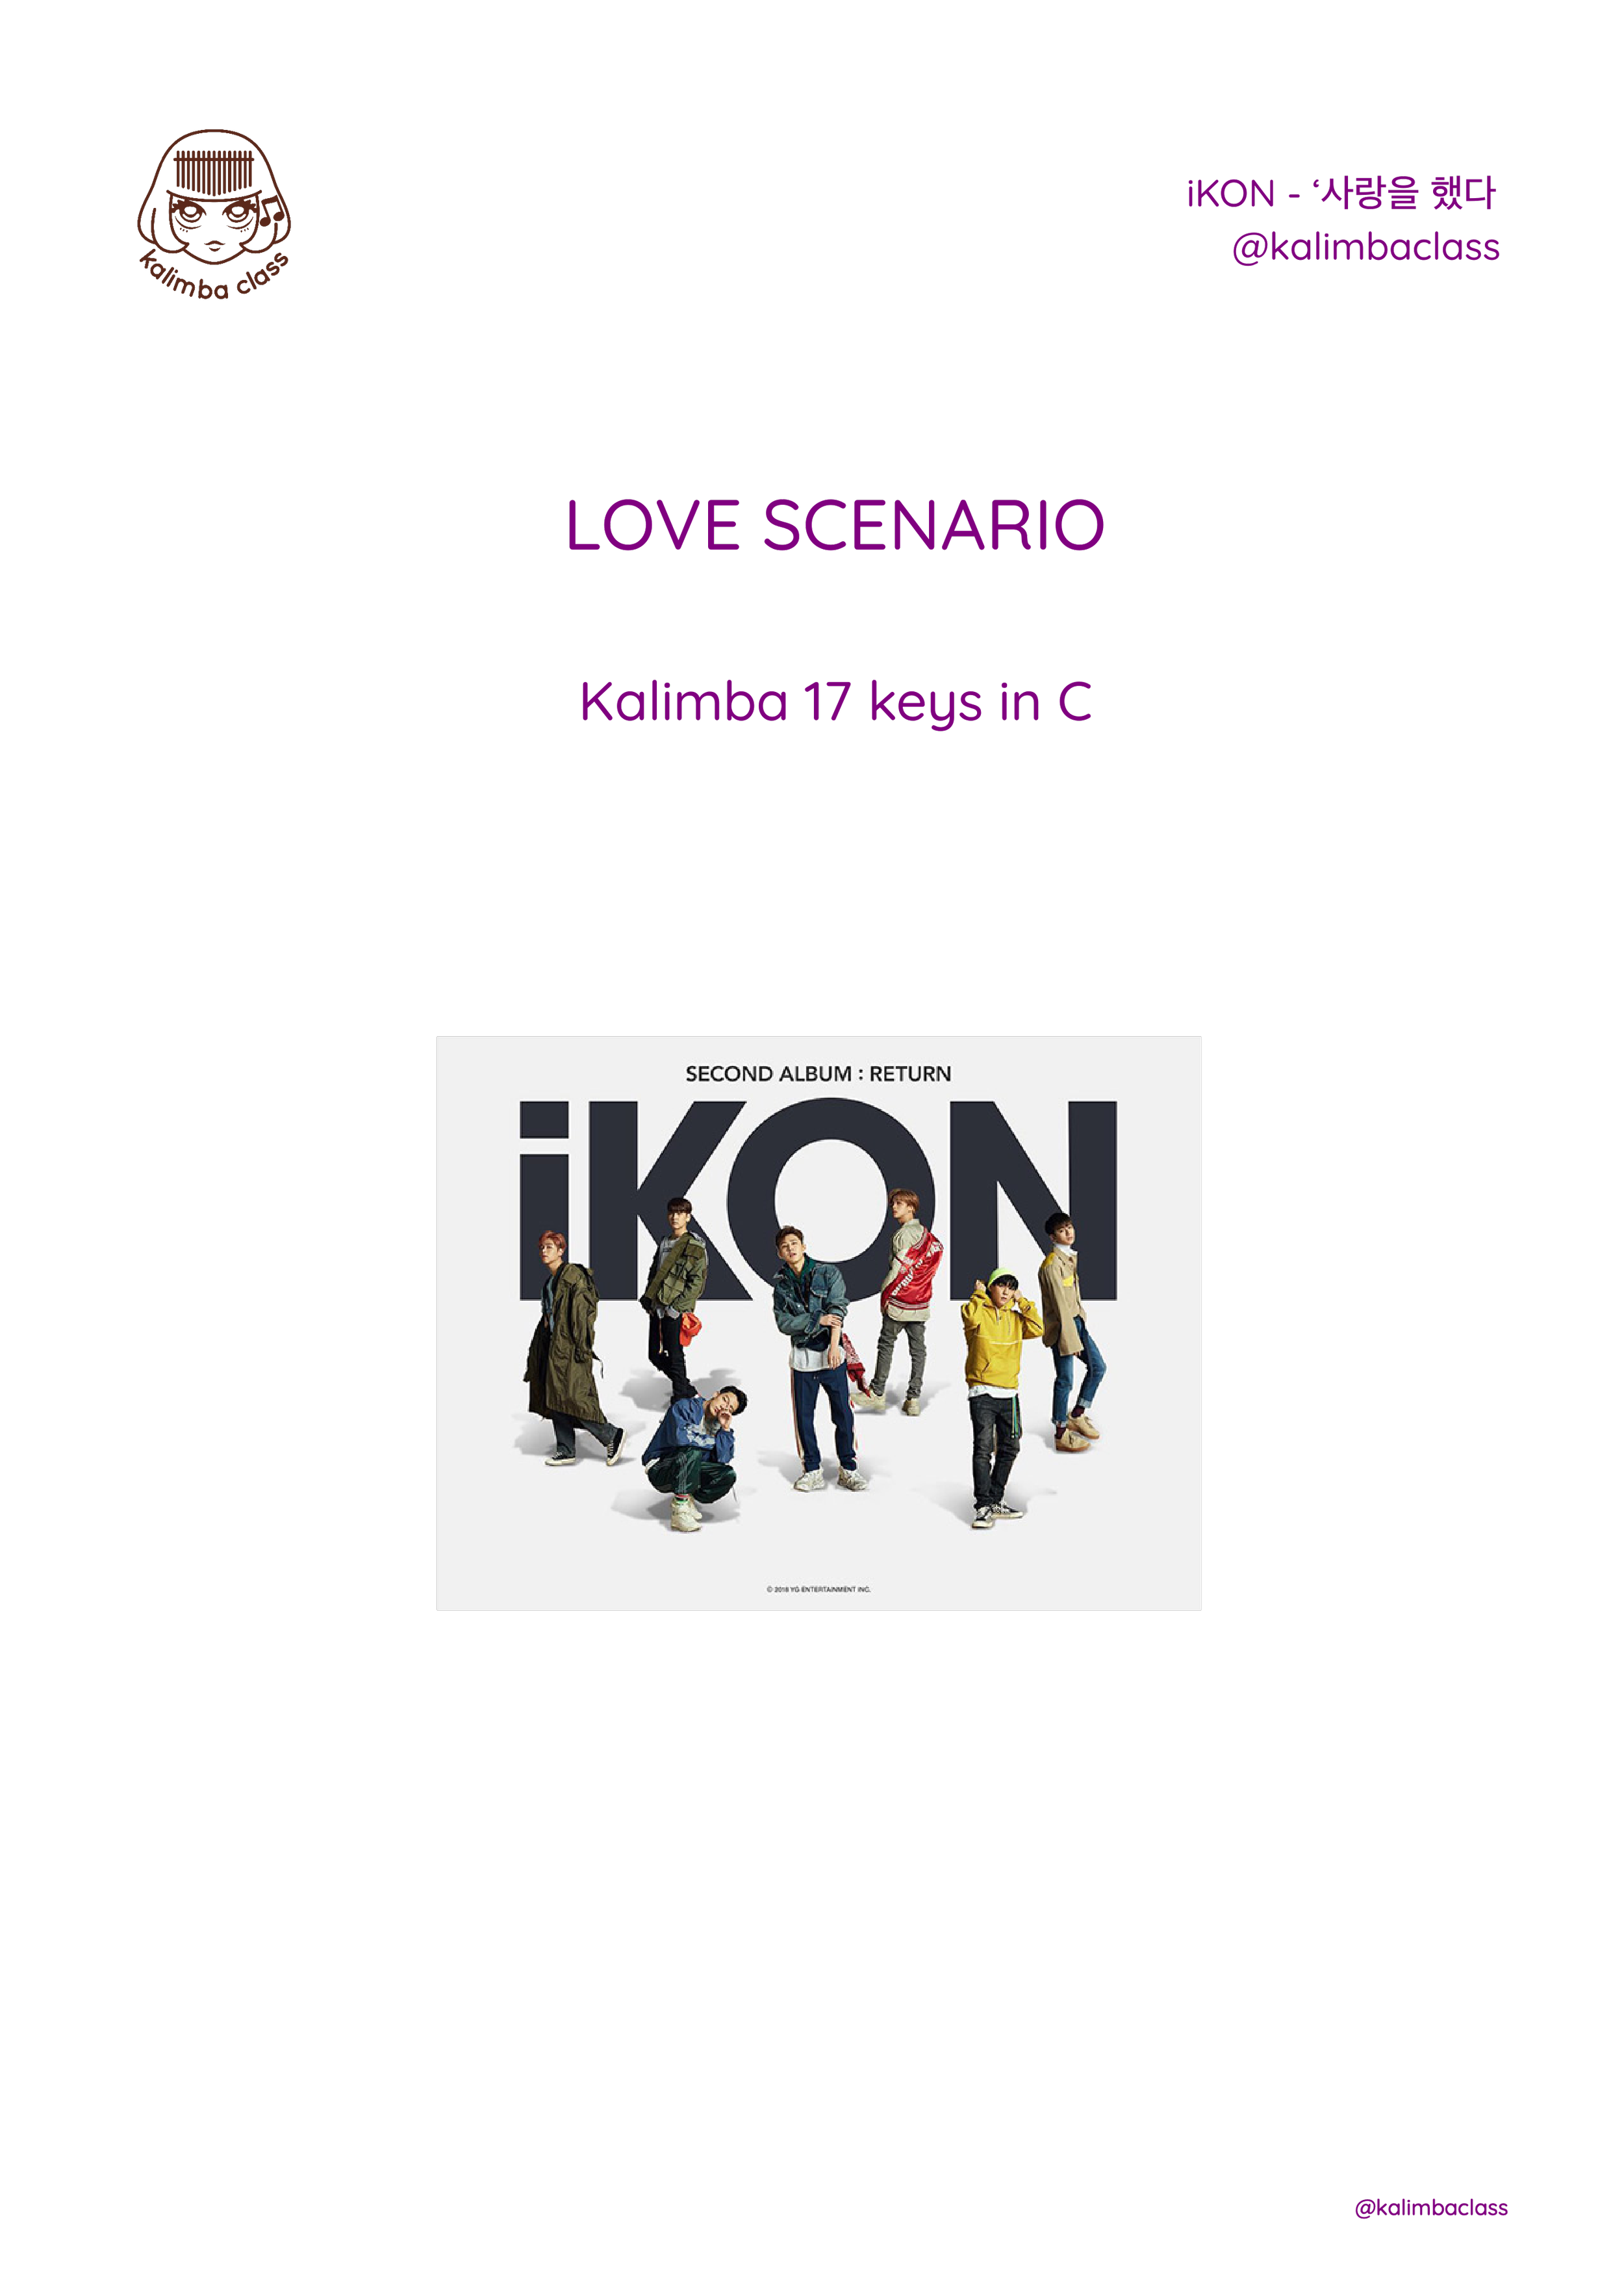 LOVE SCENARIO by iKON 